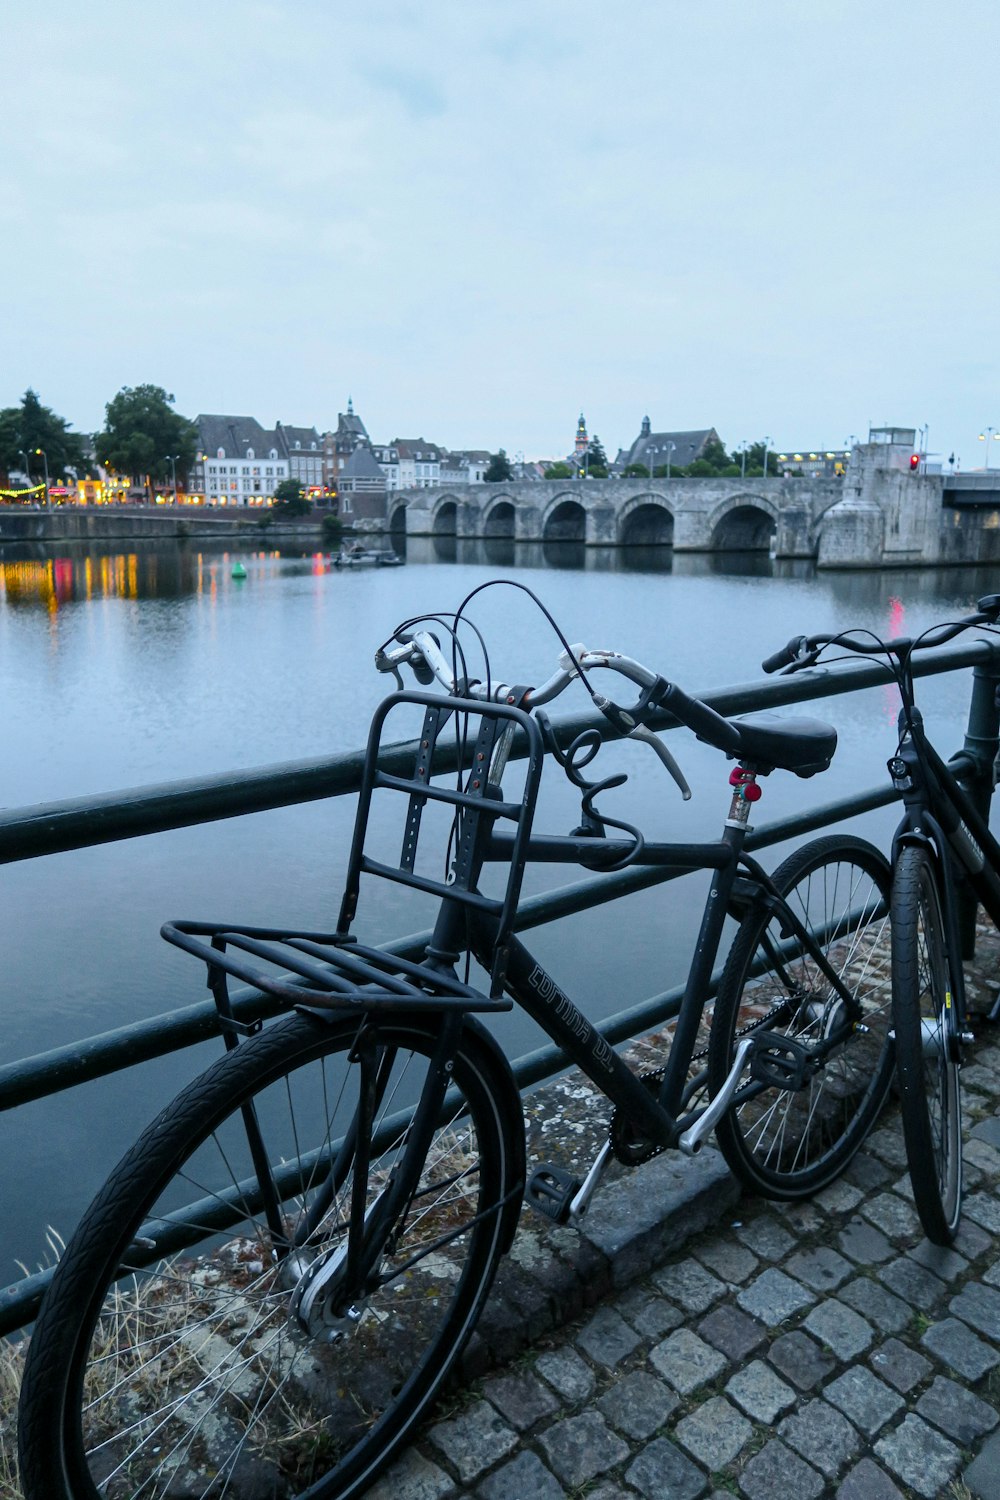 bicicletta nera parcheggiata accanto a ringhiere metalliche nere vicino allo specchio d'acqua durante il giorno